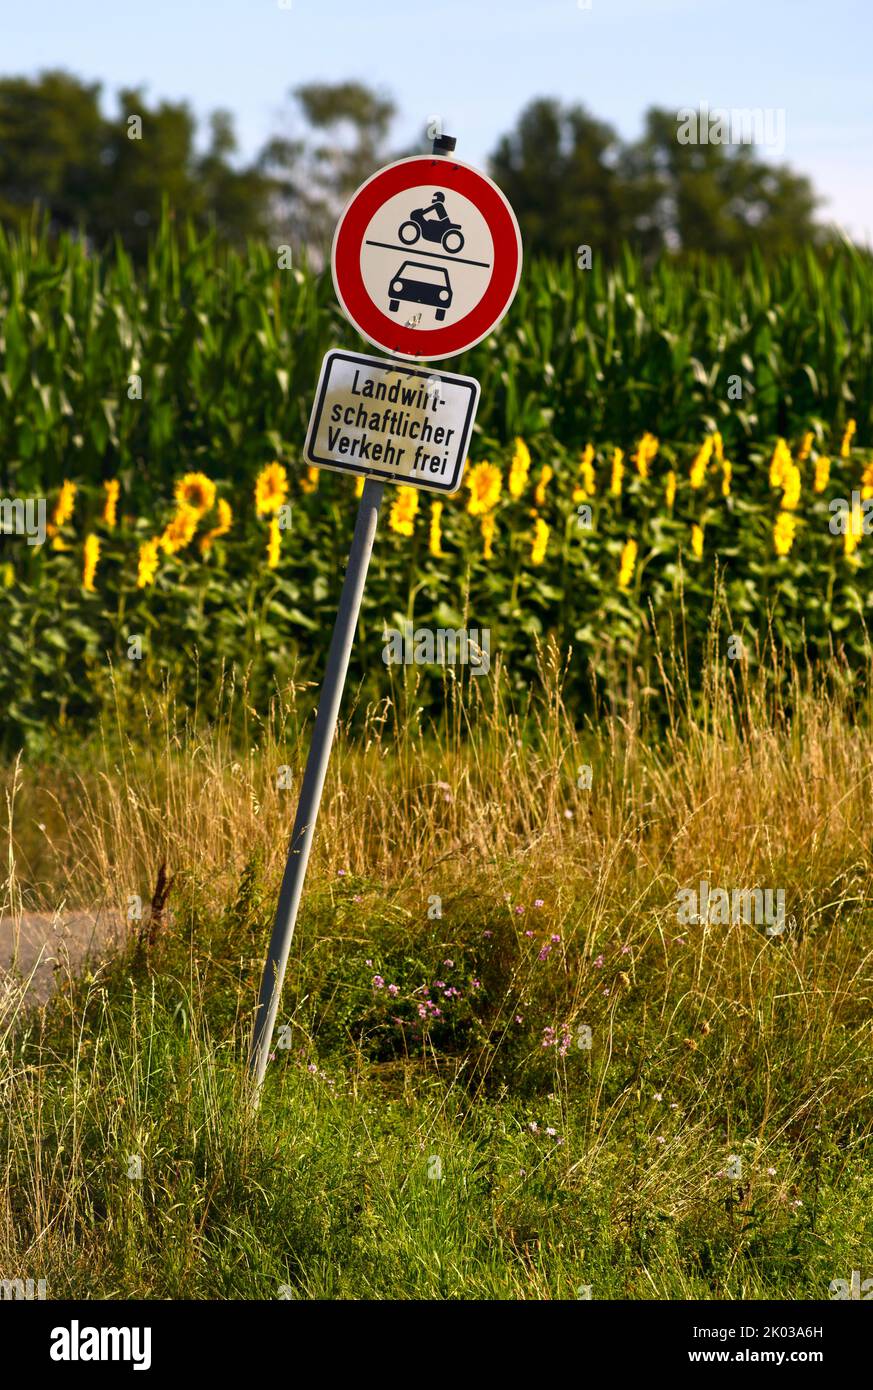 Schild nein, landwirtschaftlich verkehrsfrei, Blütenstreifen mit Sonnenblumen (Helianthus annuus), Kornfeld, Fellbach, Baden-Württemberg, Deutschland Stockfoto